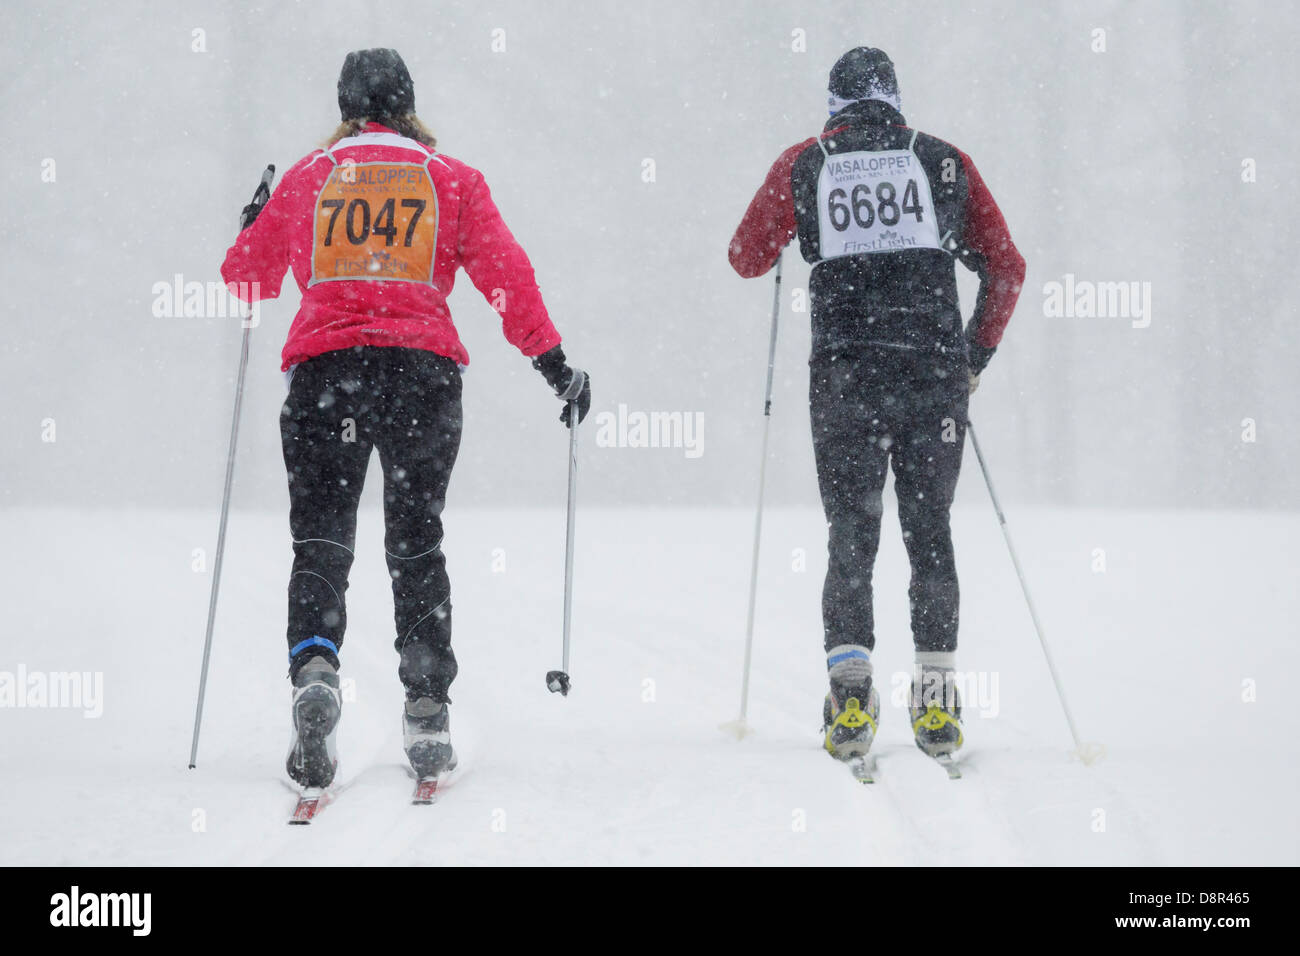 La neve cade come concorrenti sci in Mora Vasaloppet nel febbraio 10, 2013 vicino a Mora, Minnesota. Foto Stock